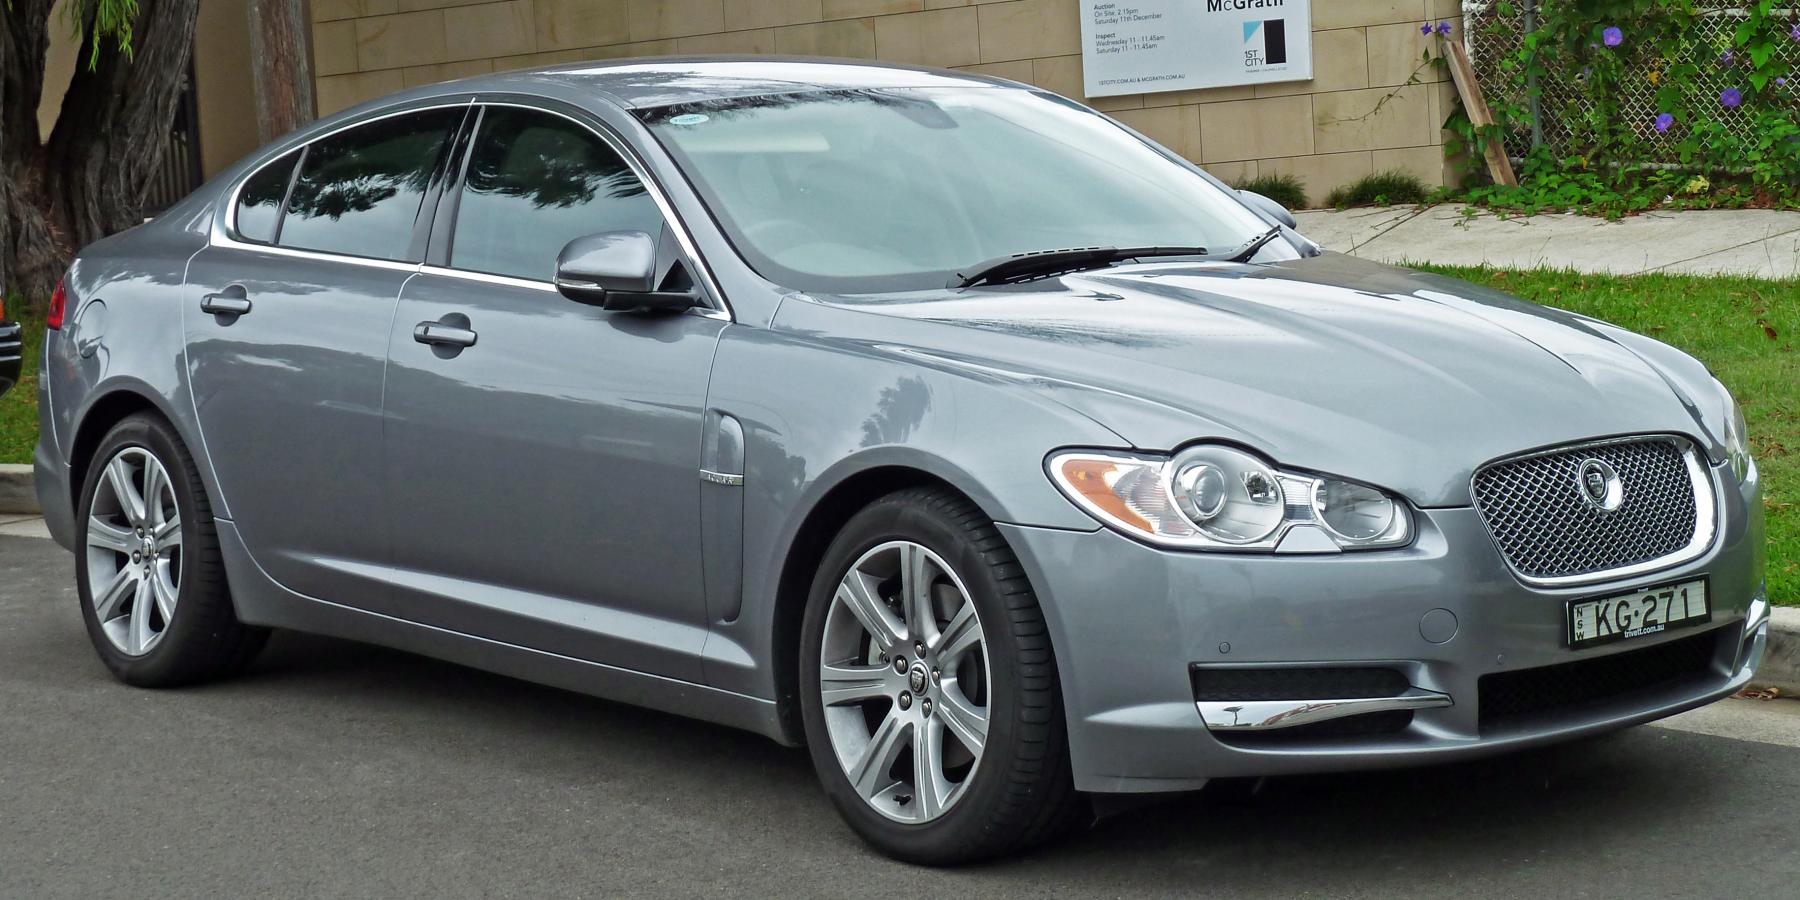 2009-2010_Jaguar_XF_(X250_MY10)_Luxury_sedan_(2011-01-13).jpg